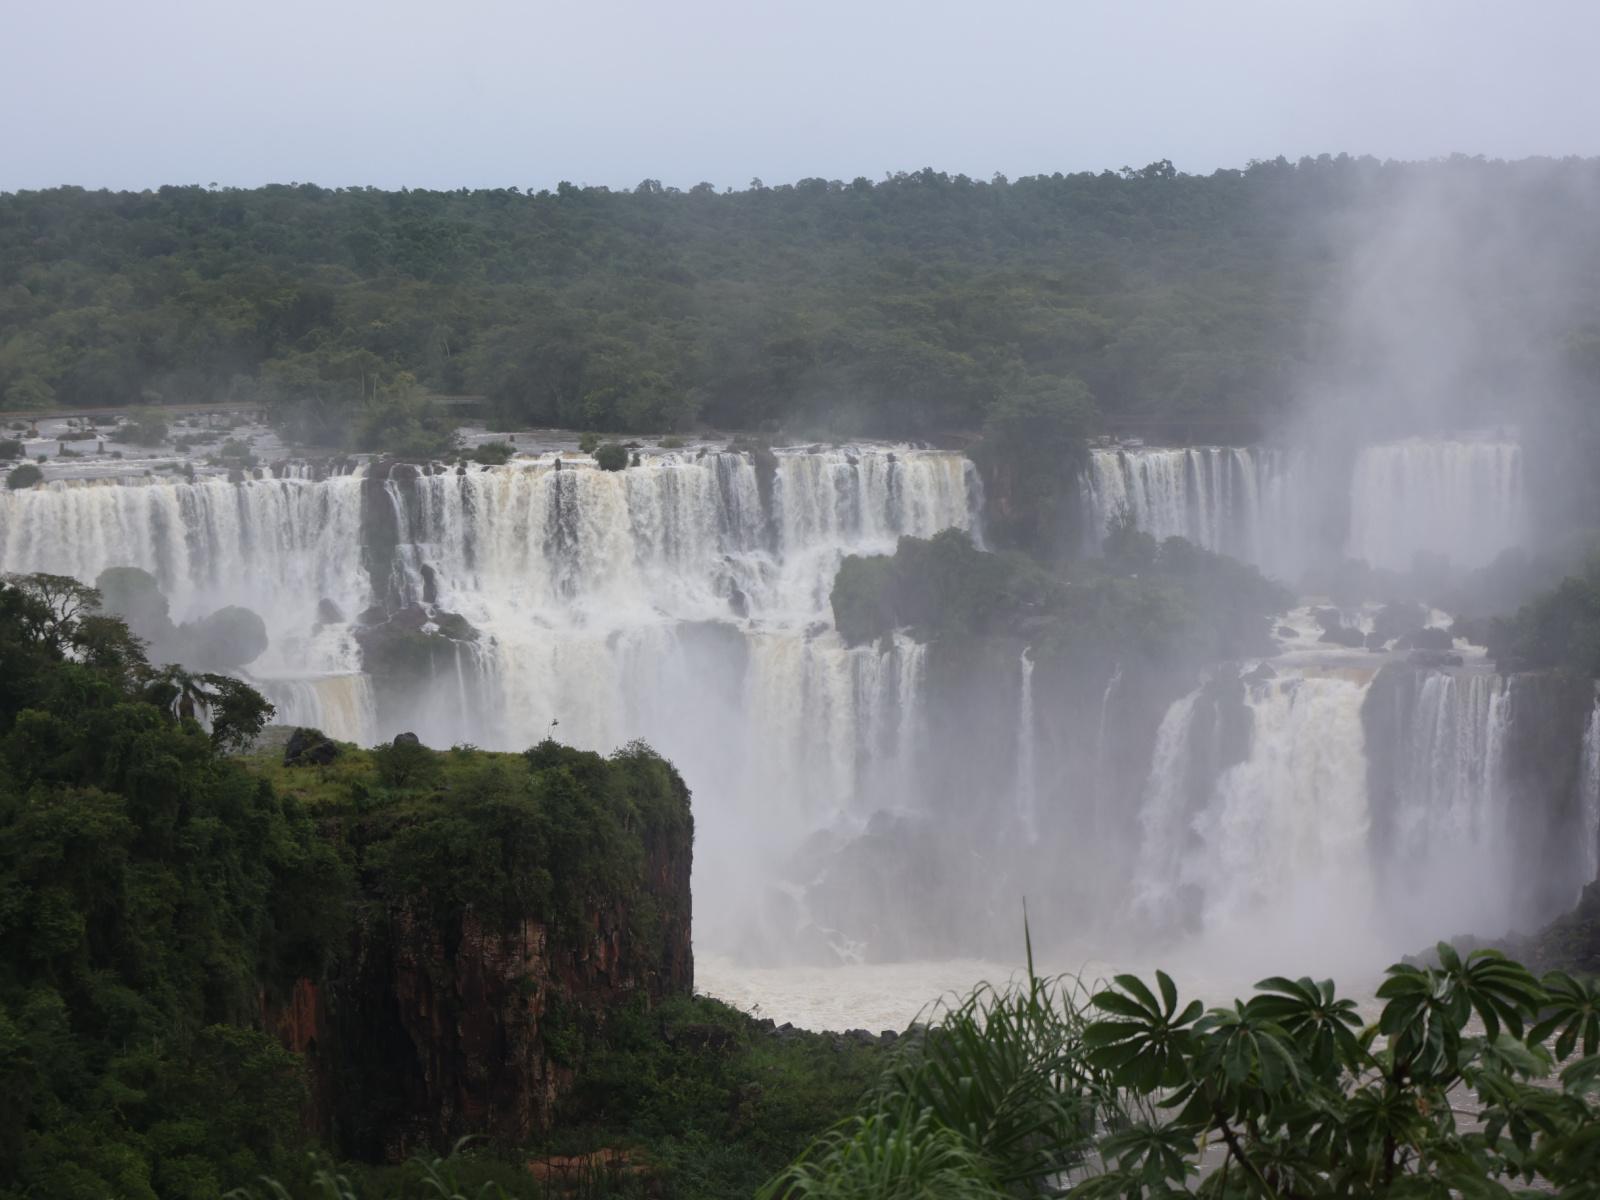 Les chutes d’Iguazu attirent les touristes